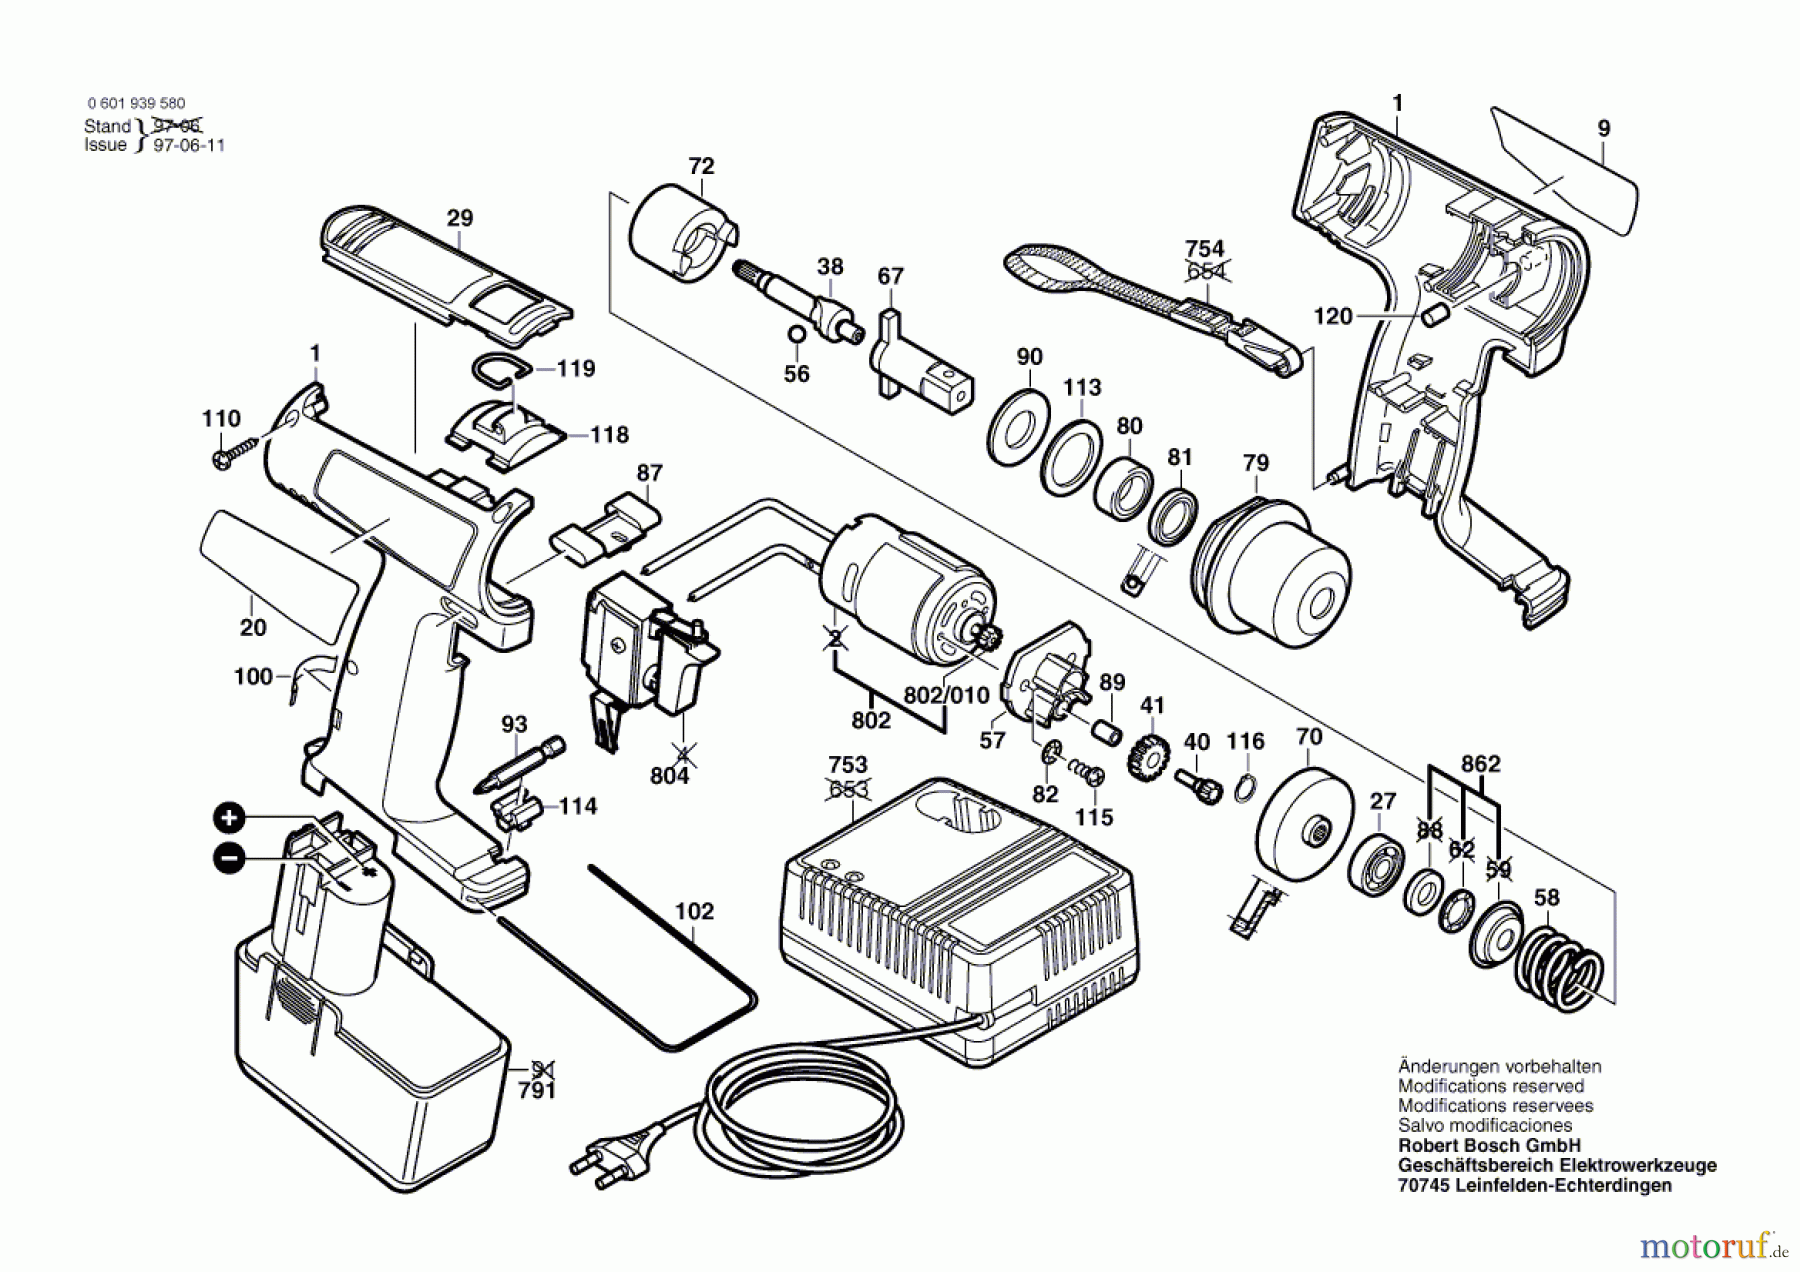  Bosch Akku Werkzeug Akku-Drehschlagschrauber GDR 110 Seite 1